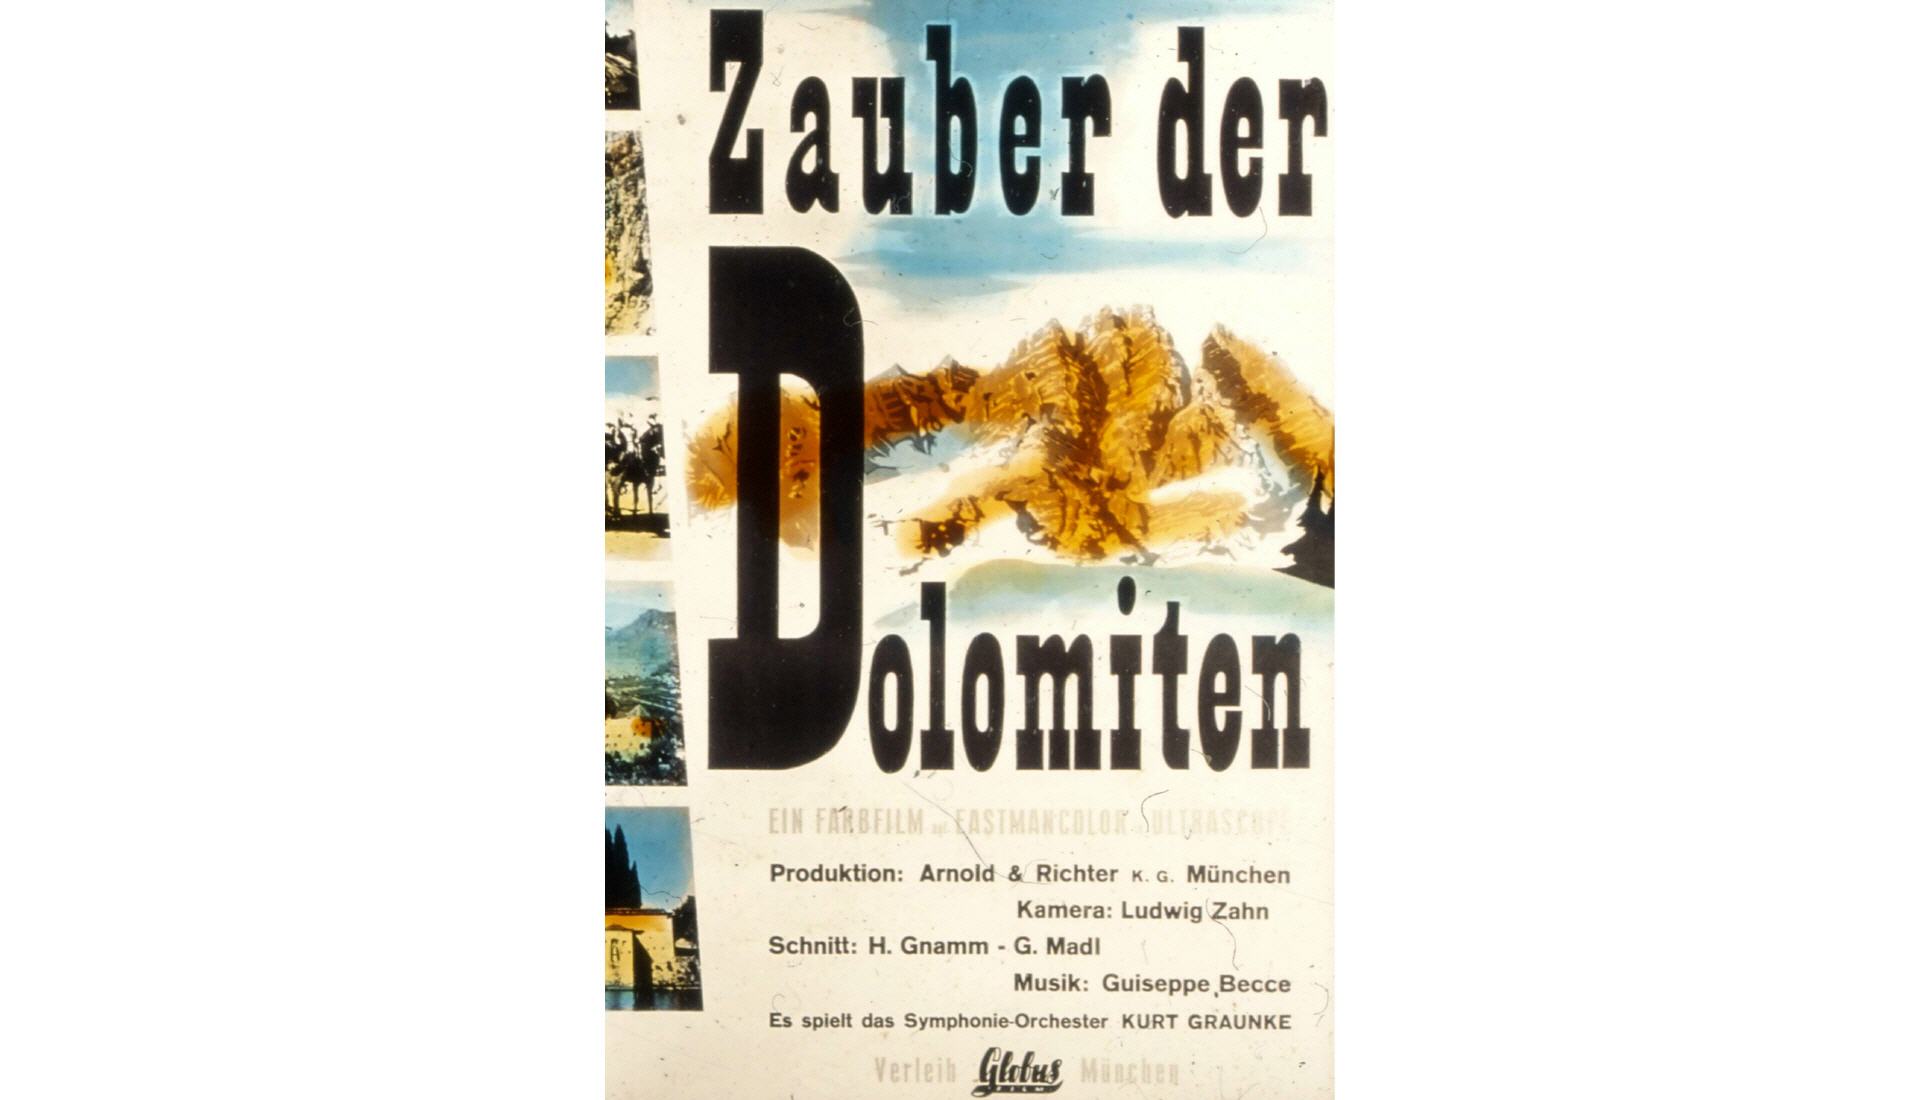 ZAUBER DER DOLOMITEN (1959)